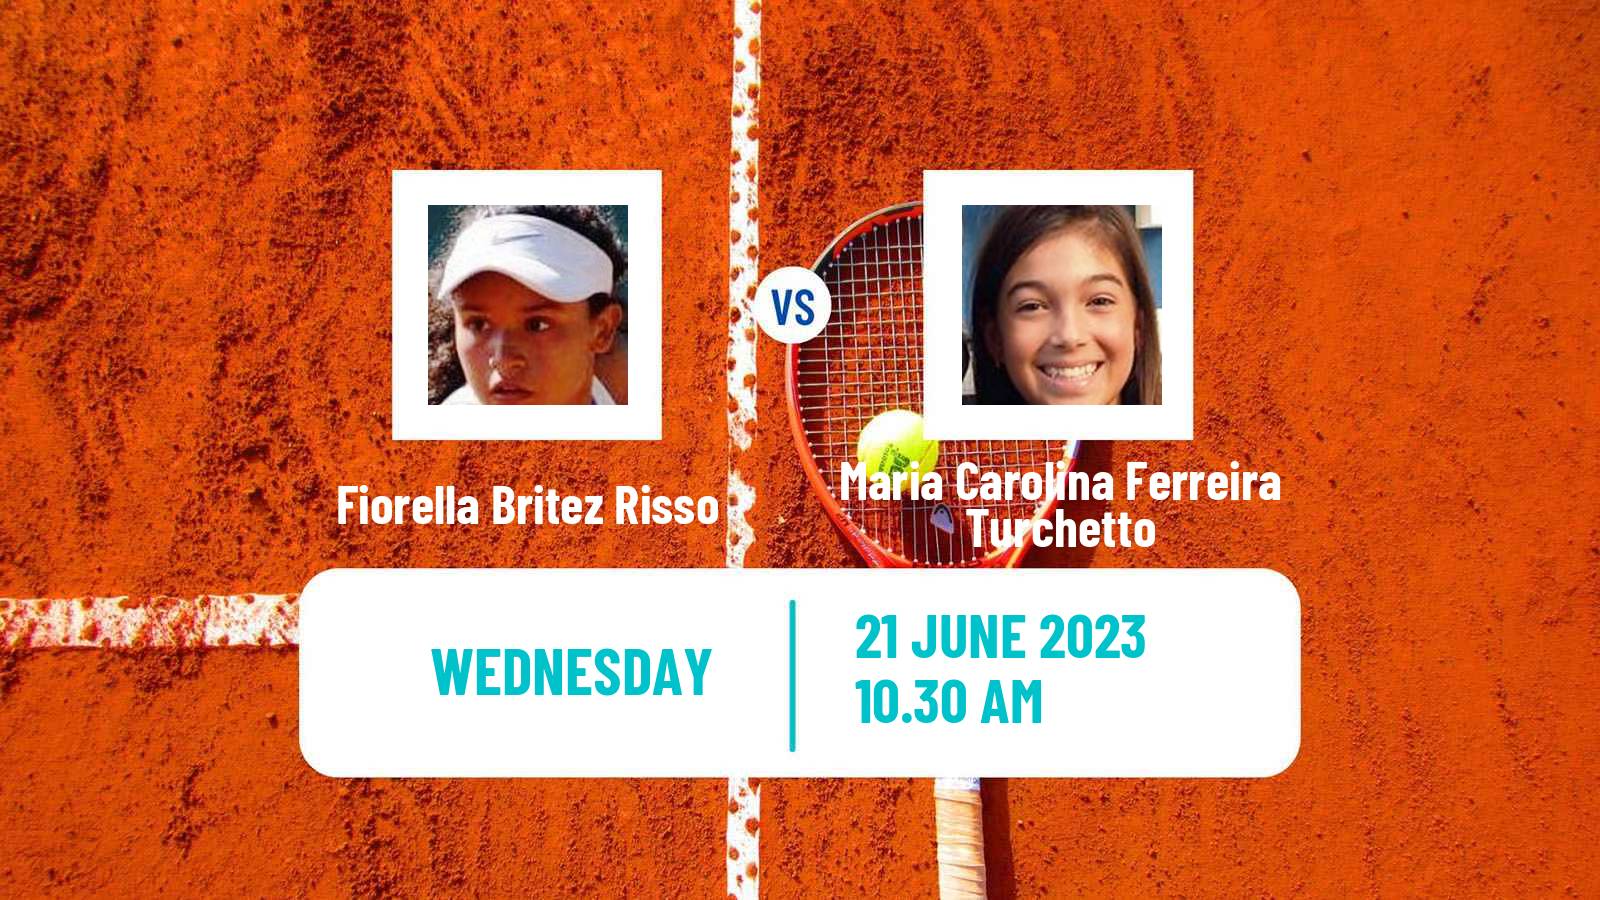 Tennis ITF W15 Buenos Aires Women Fiorella Britez Risso - Maria Carolina Ferreira Turchetto